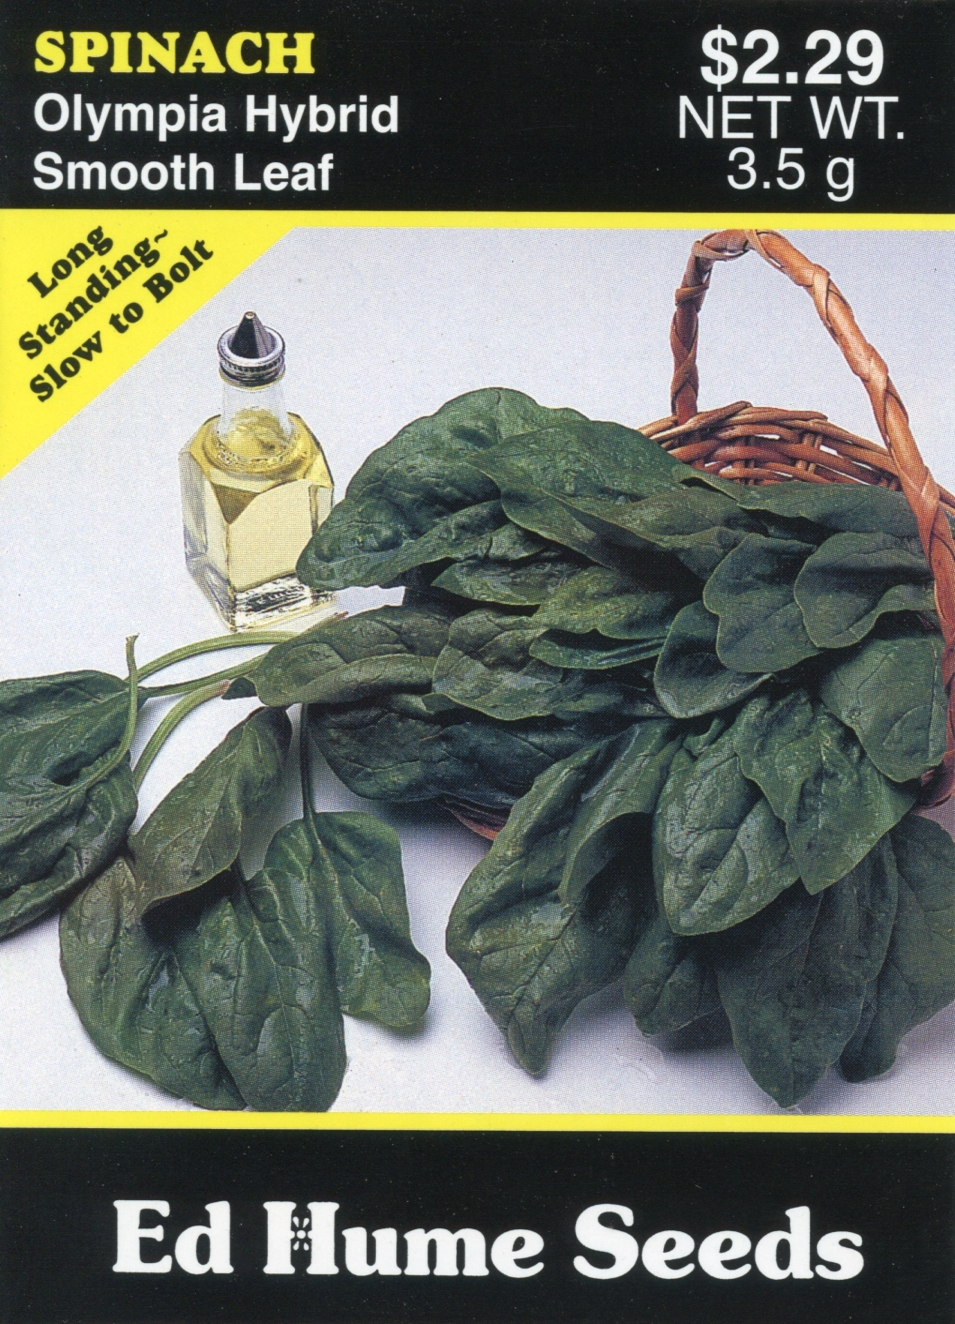 Spinach - Olympia Hybrid, Smooth Leaf